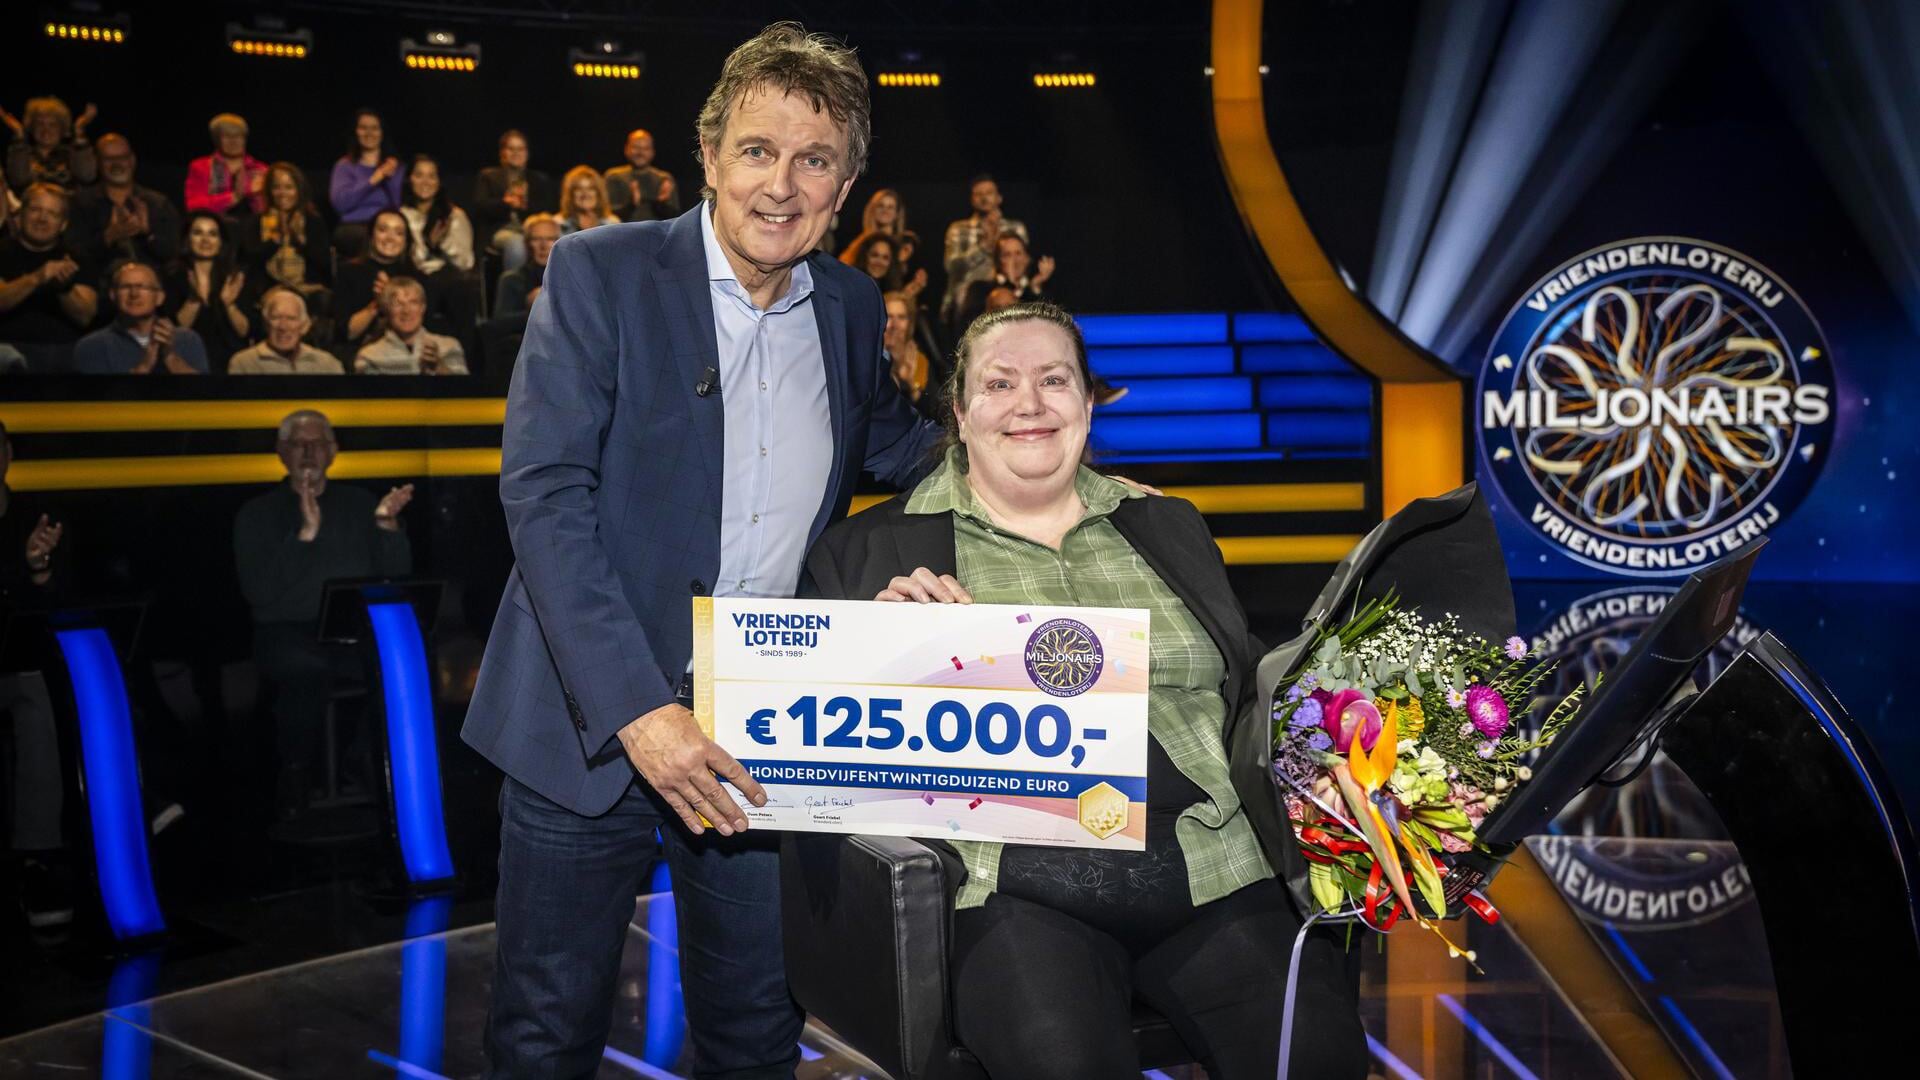 Een van de hoogste bedragen ooit: 125.000 euro voor Marjolein uit Rijswijk bij VriendenLoterij Miljonairs